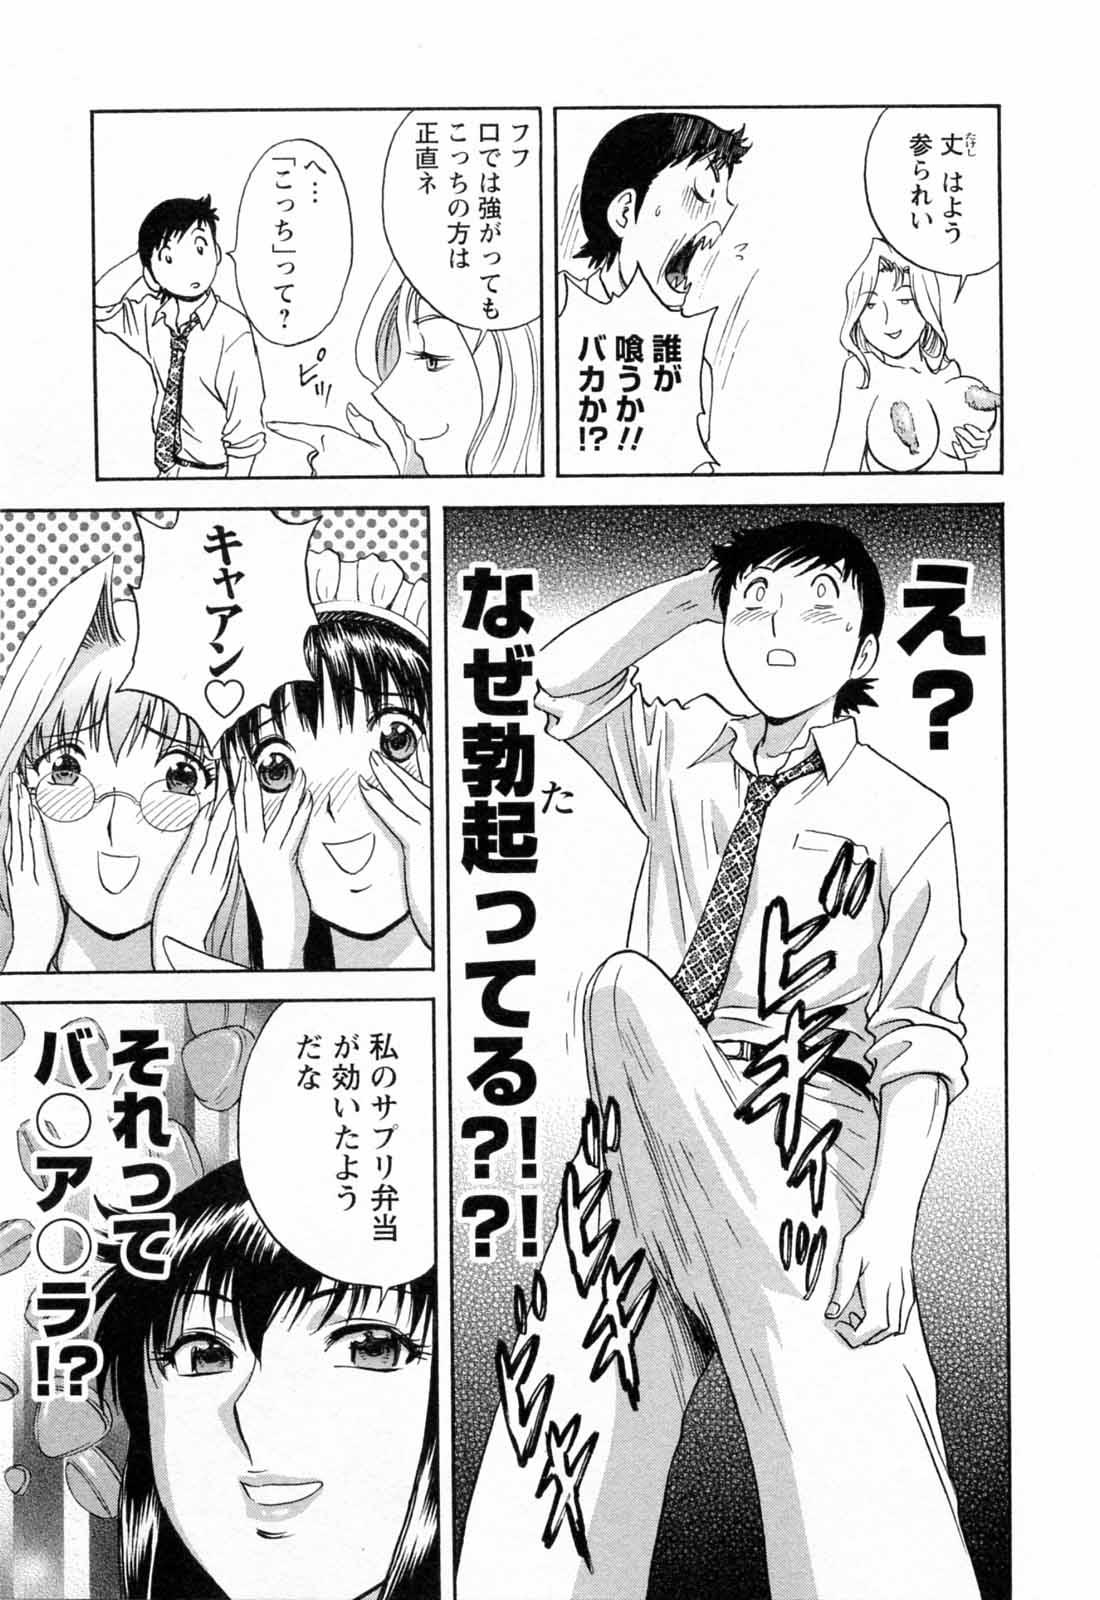 [Hidemaru] Mo-Retsu! Boin Sensei (Boing Boing Teacher) Vol.5 82